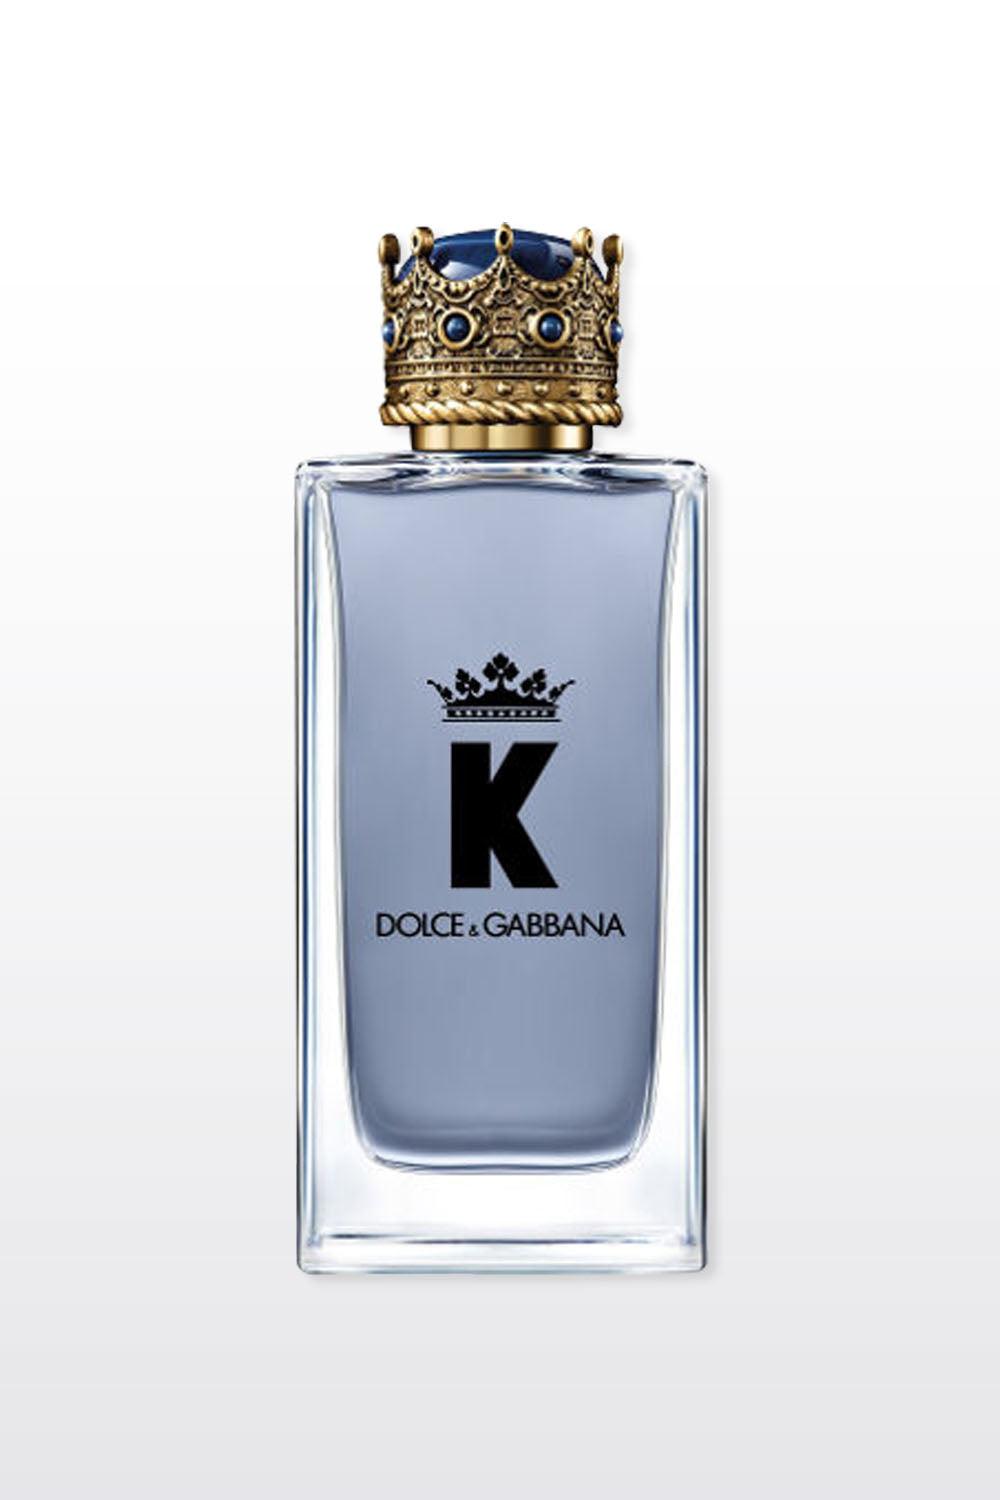 Dolce & Gabbana - K EDT בושם לגבר 100 מ"ל - MASHBIR//365